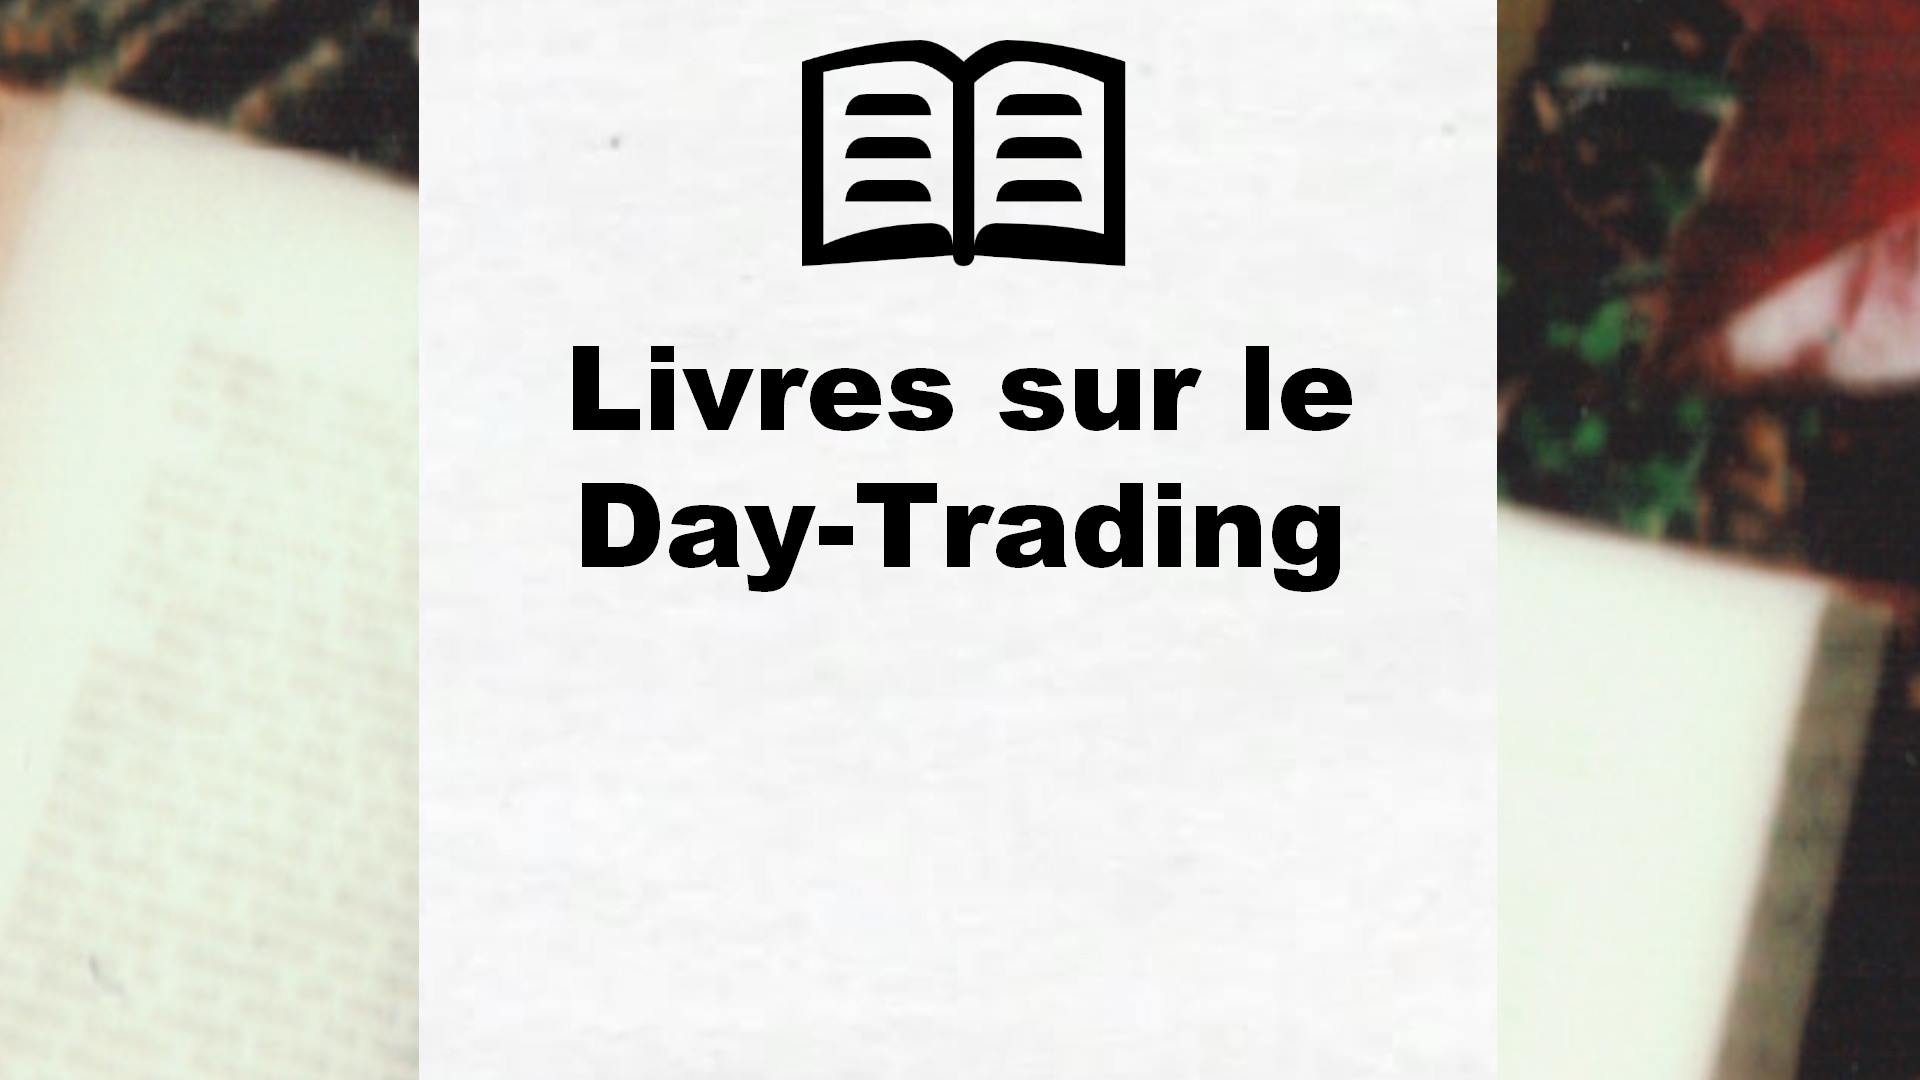 Livres sur le Day-Trading